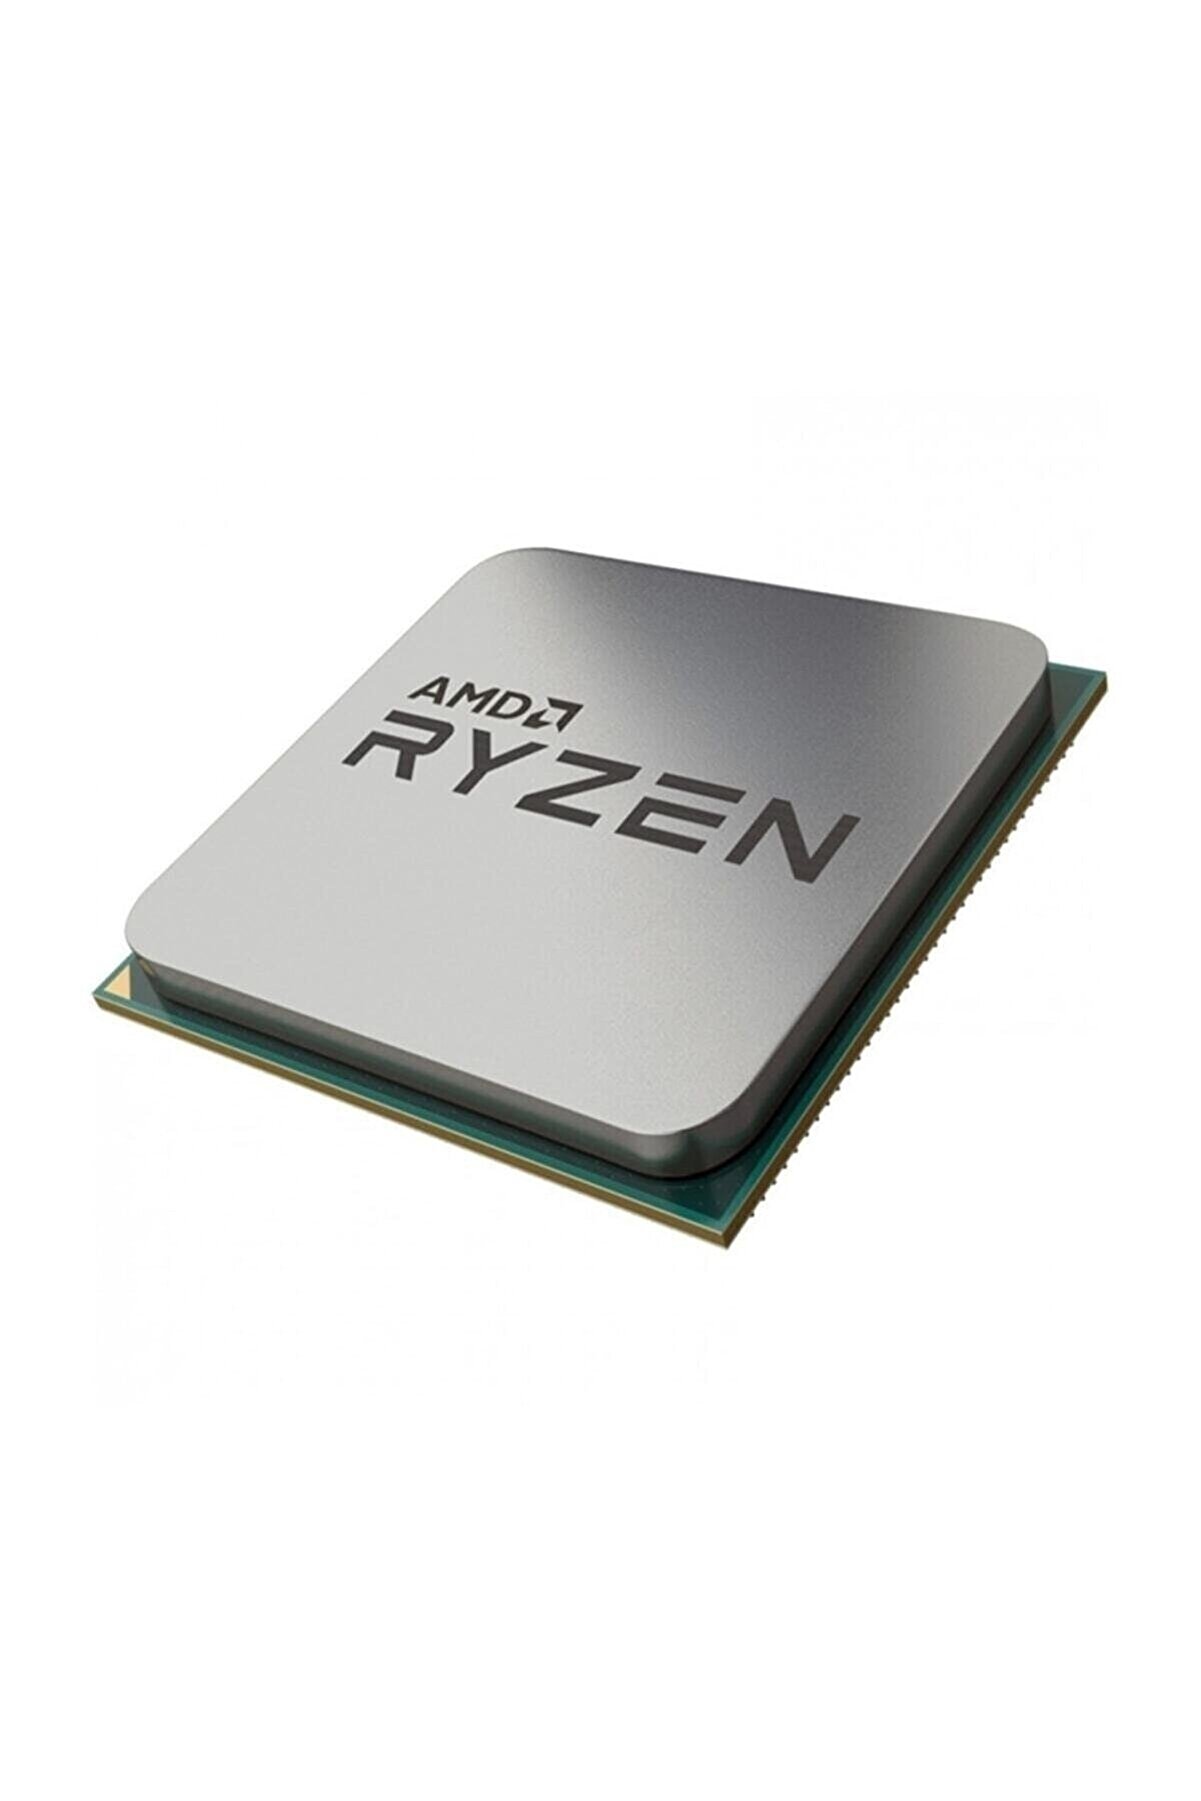 Amd Ryzen™ 5 5600x 3.7ghz (turbo 4.6ghz) 6 Core 12 Threads 32mb Cache 7nm Am4 Işlemci - Tray